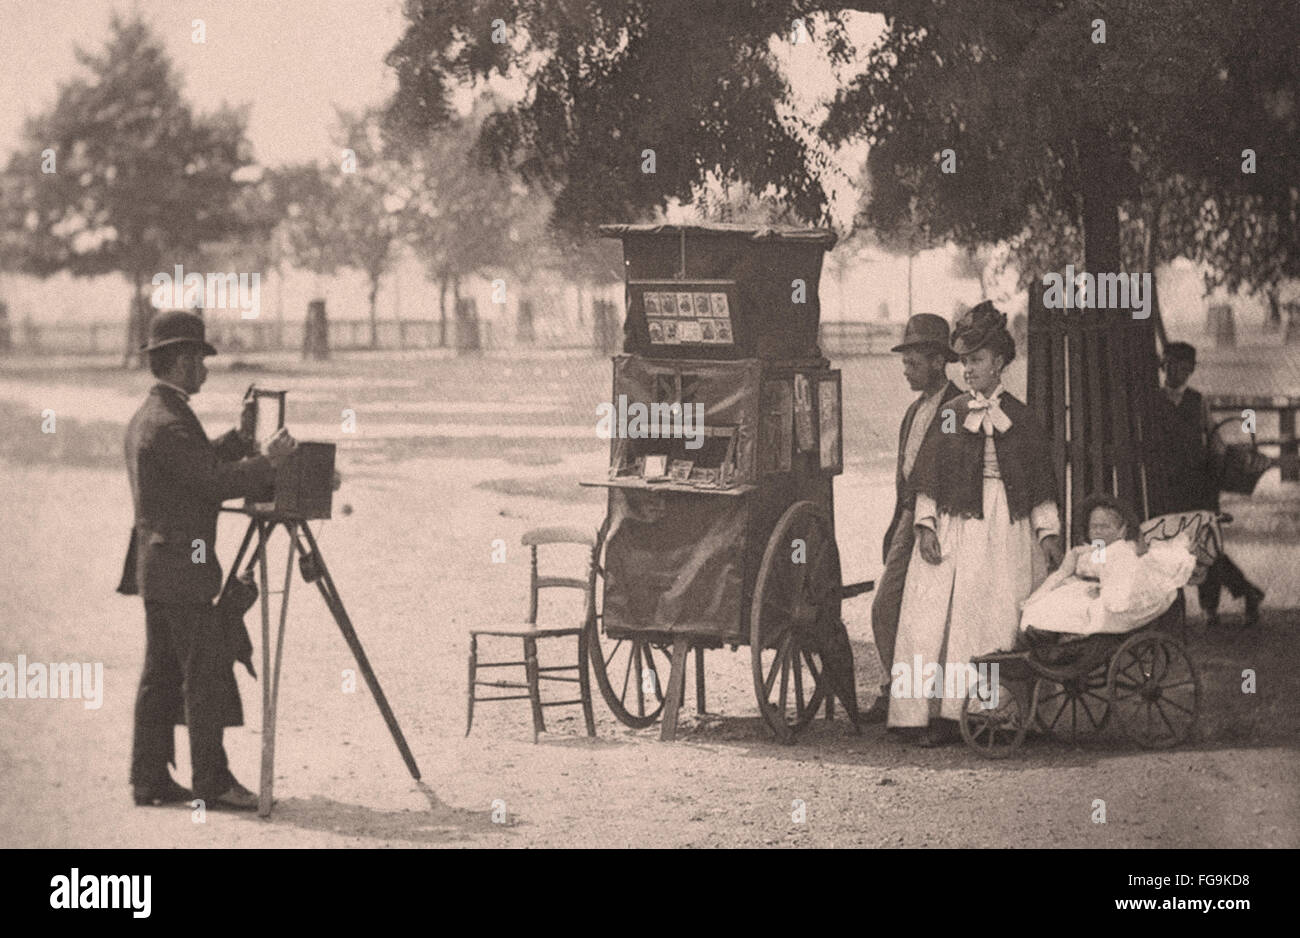 Leben auf der Straße in London aus dem viktorianischen Zeitalter - Straßenfotograf Stockfoto